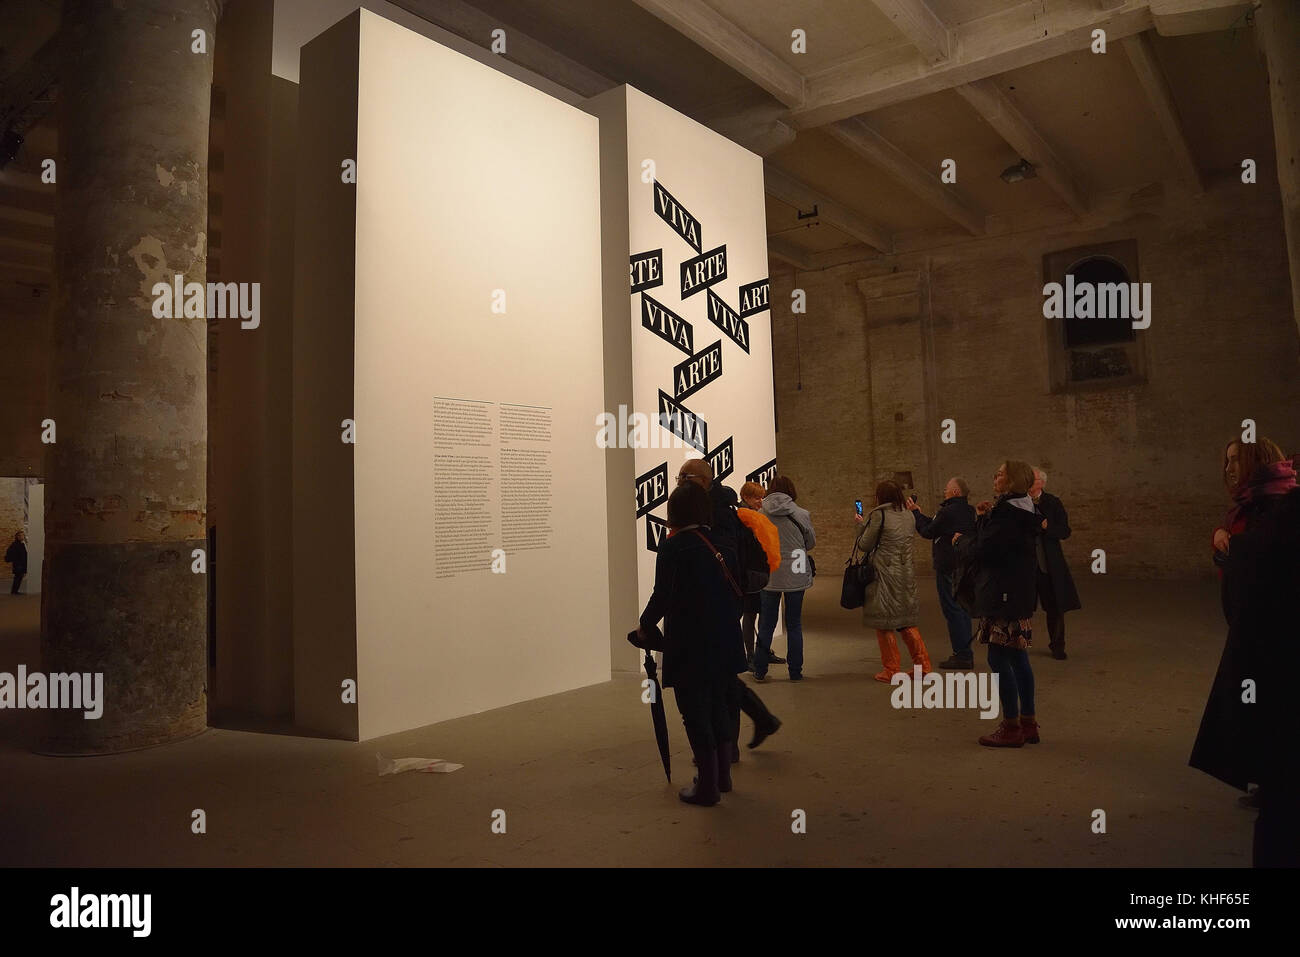 November 7, 2017 - Ansturm der Besucher am Eingang zu "Viva Arte Viva''. Auf der 57. Biennale der Kunst in Venedig. Diese Ausstellung bietet eine Route, die im Laufe der neun Kapiteln oder Familien der Künstler entfaltet. Credit: c) imageslive/zuma Draht/alamy leben Nachrichten Stockfoto